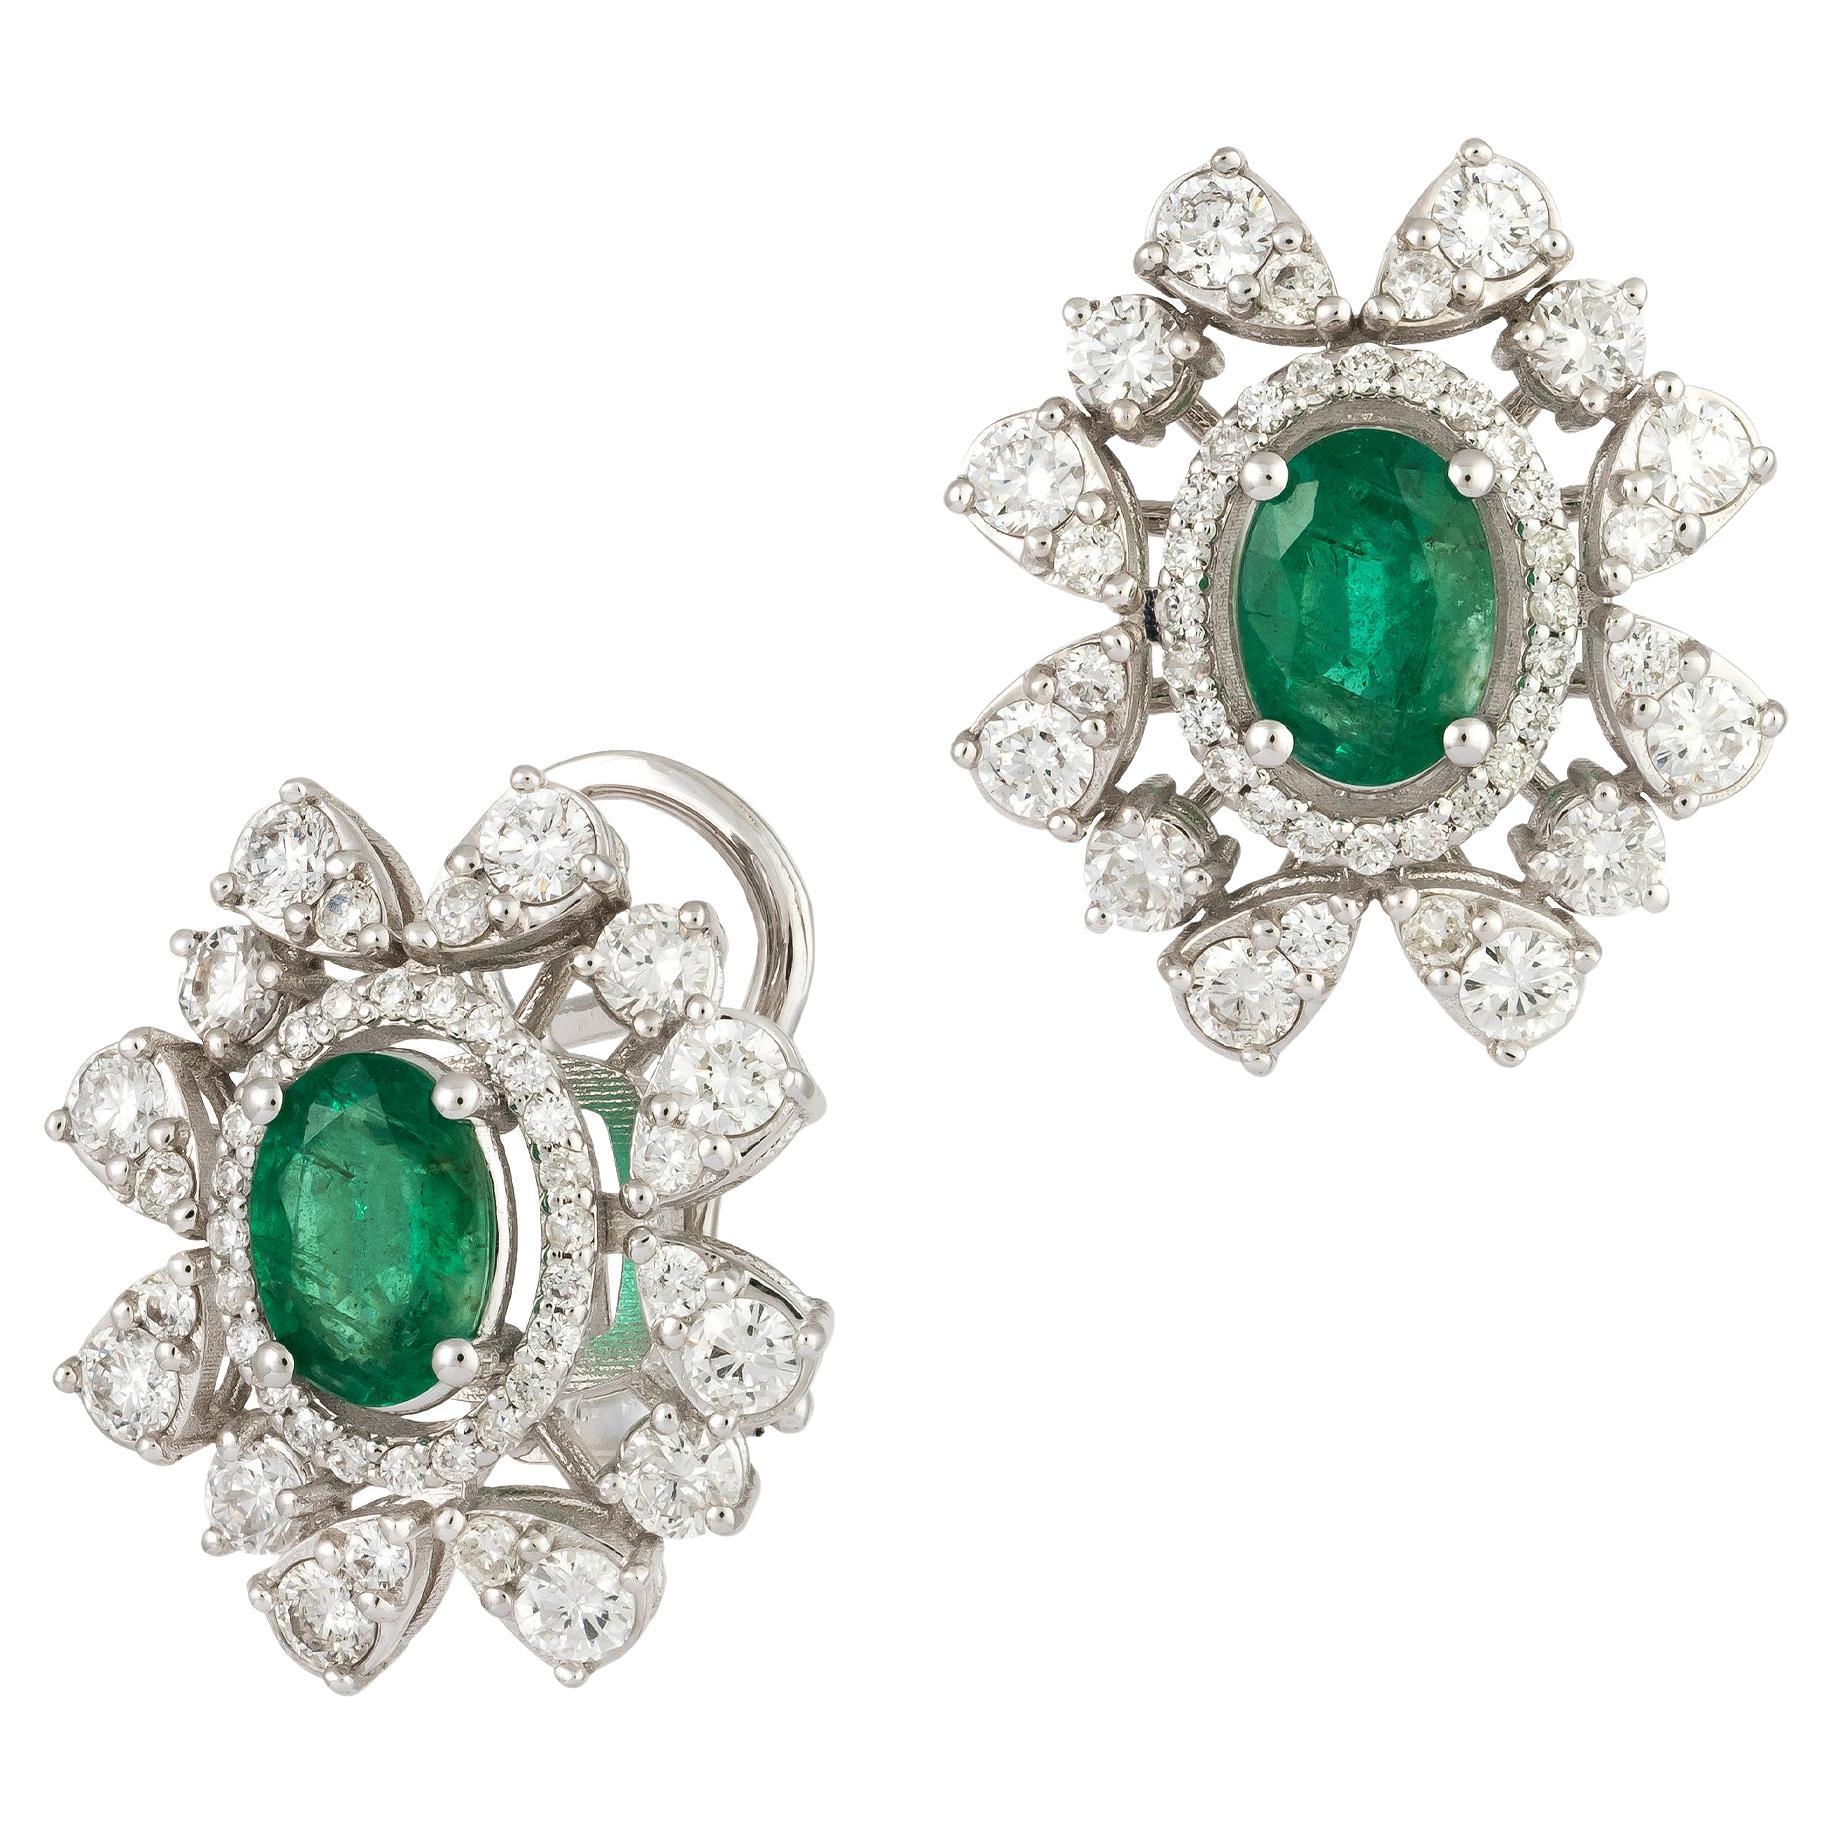 Modern White Gold 18K Earrings Emerald Diamond For Her